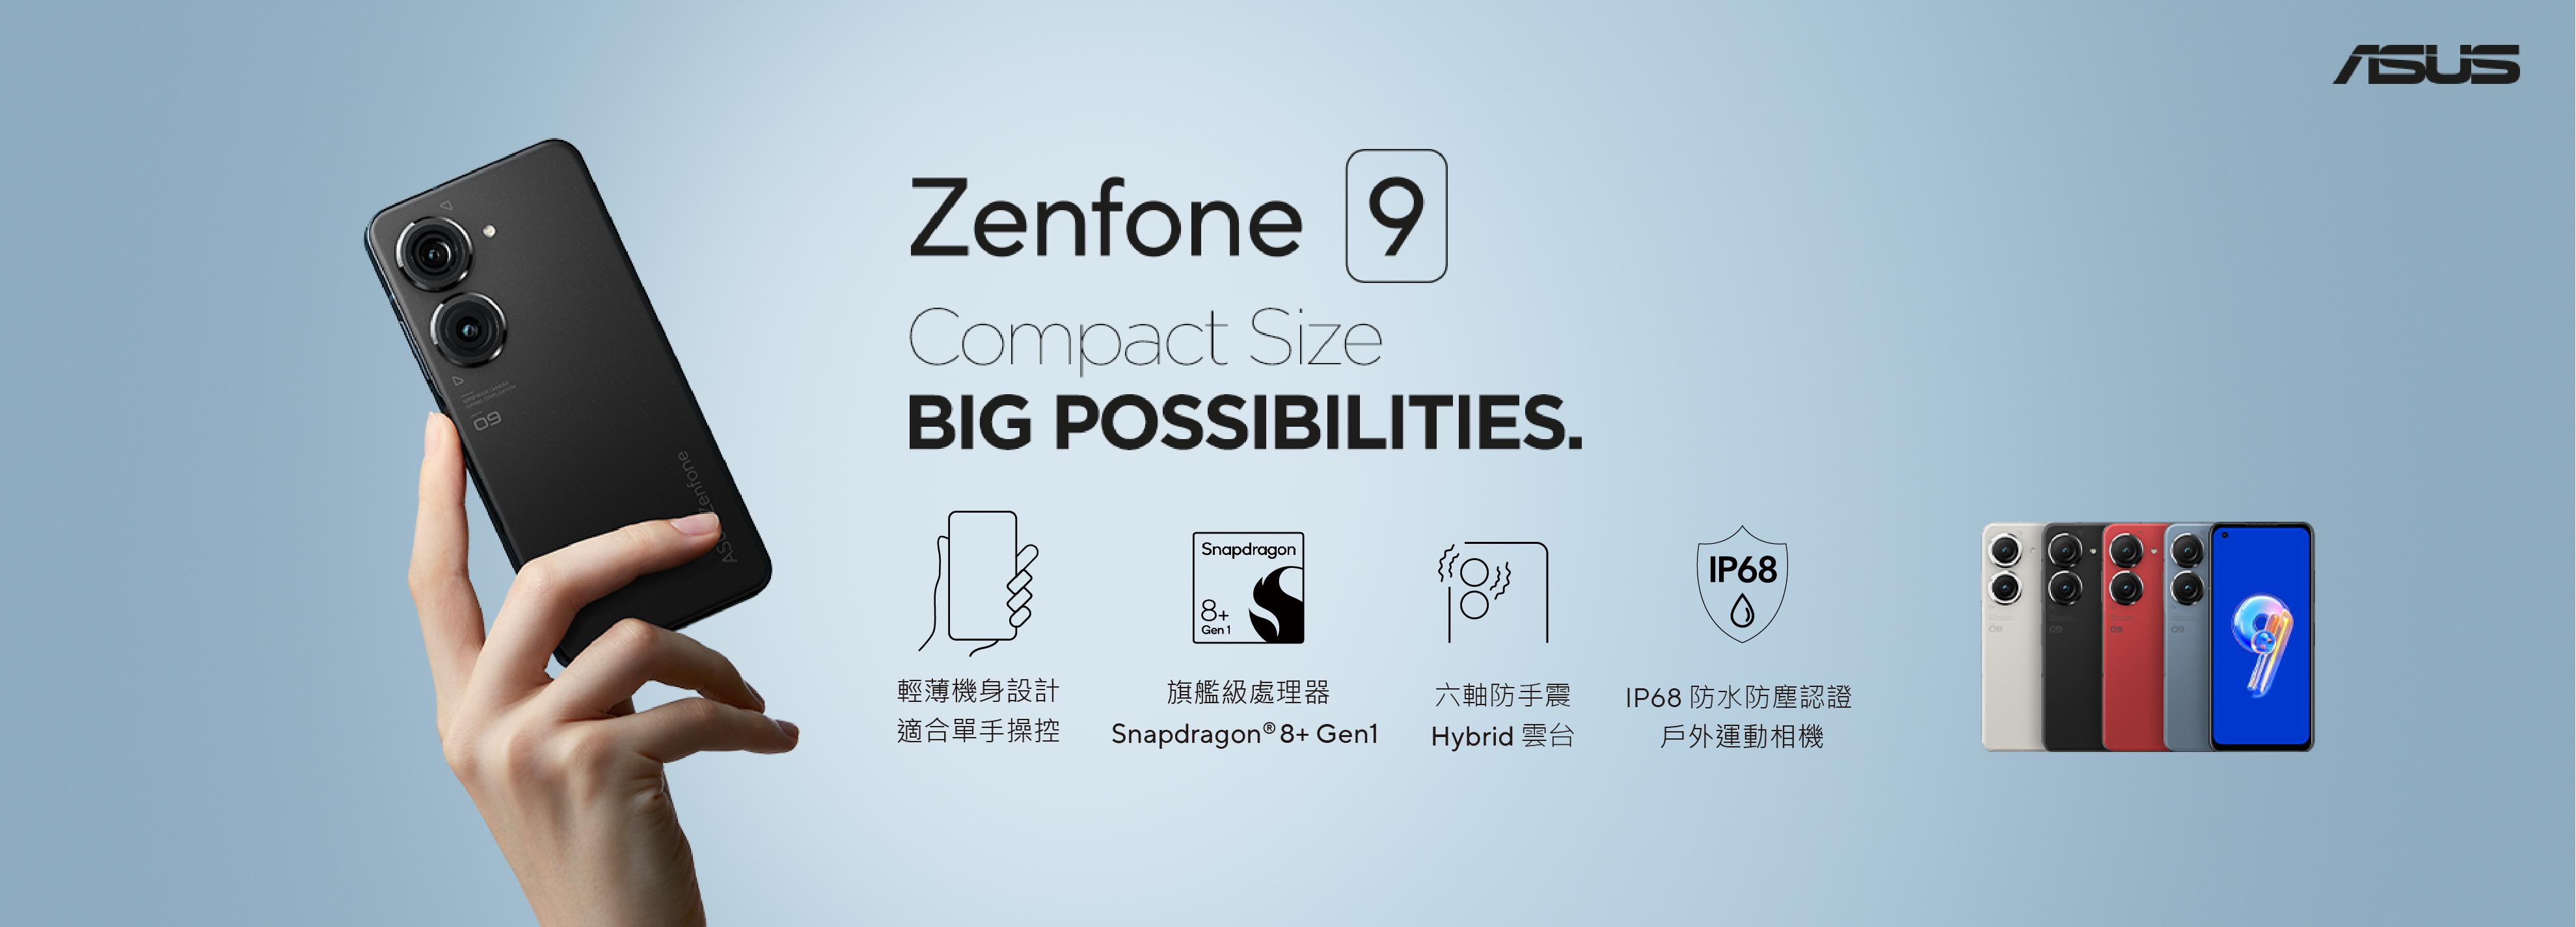 單手旗艦最強選擇 Zenfone 9 今日開賣